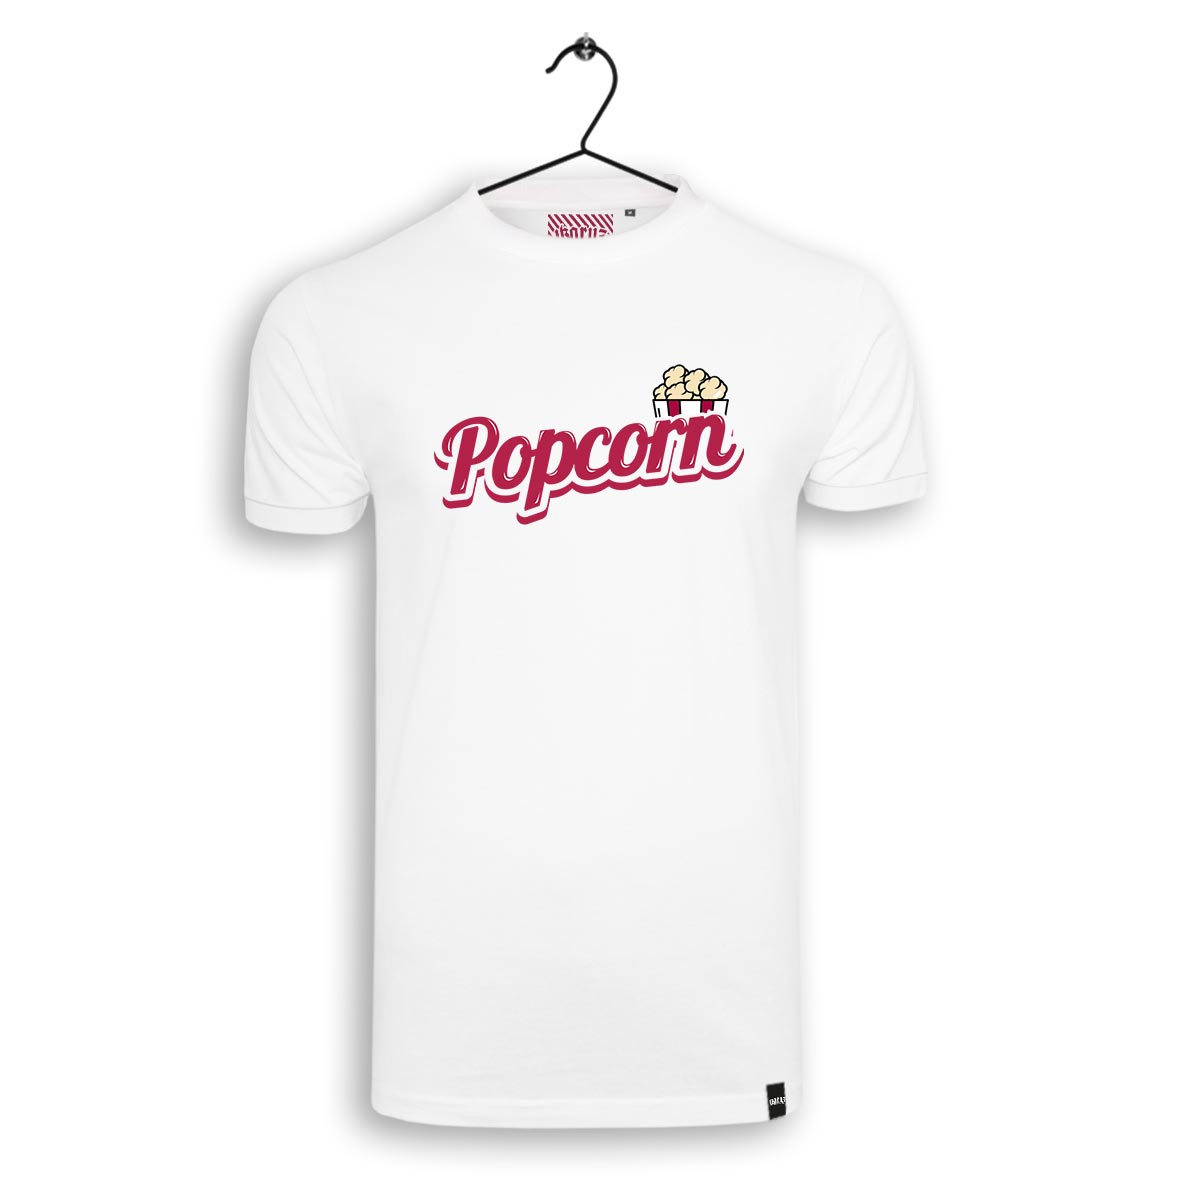 Ikrz | Popcorn | White Shirt - Ikaruz